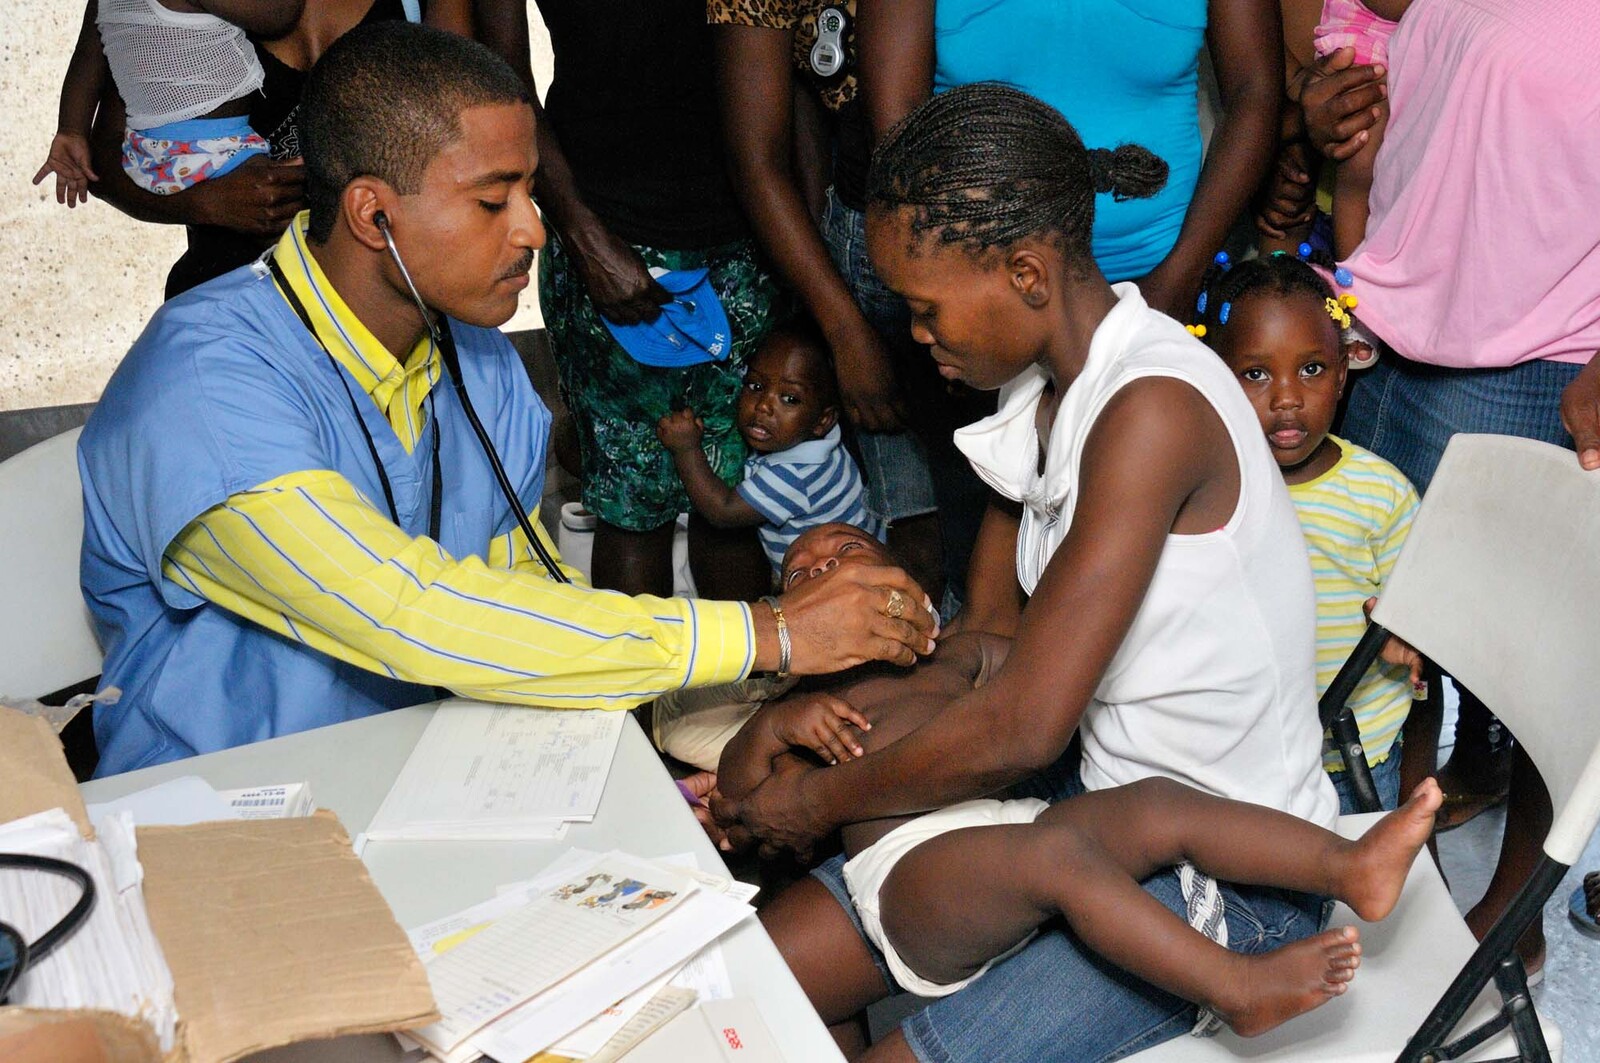 Arzt behandelt Kind mit Cholera